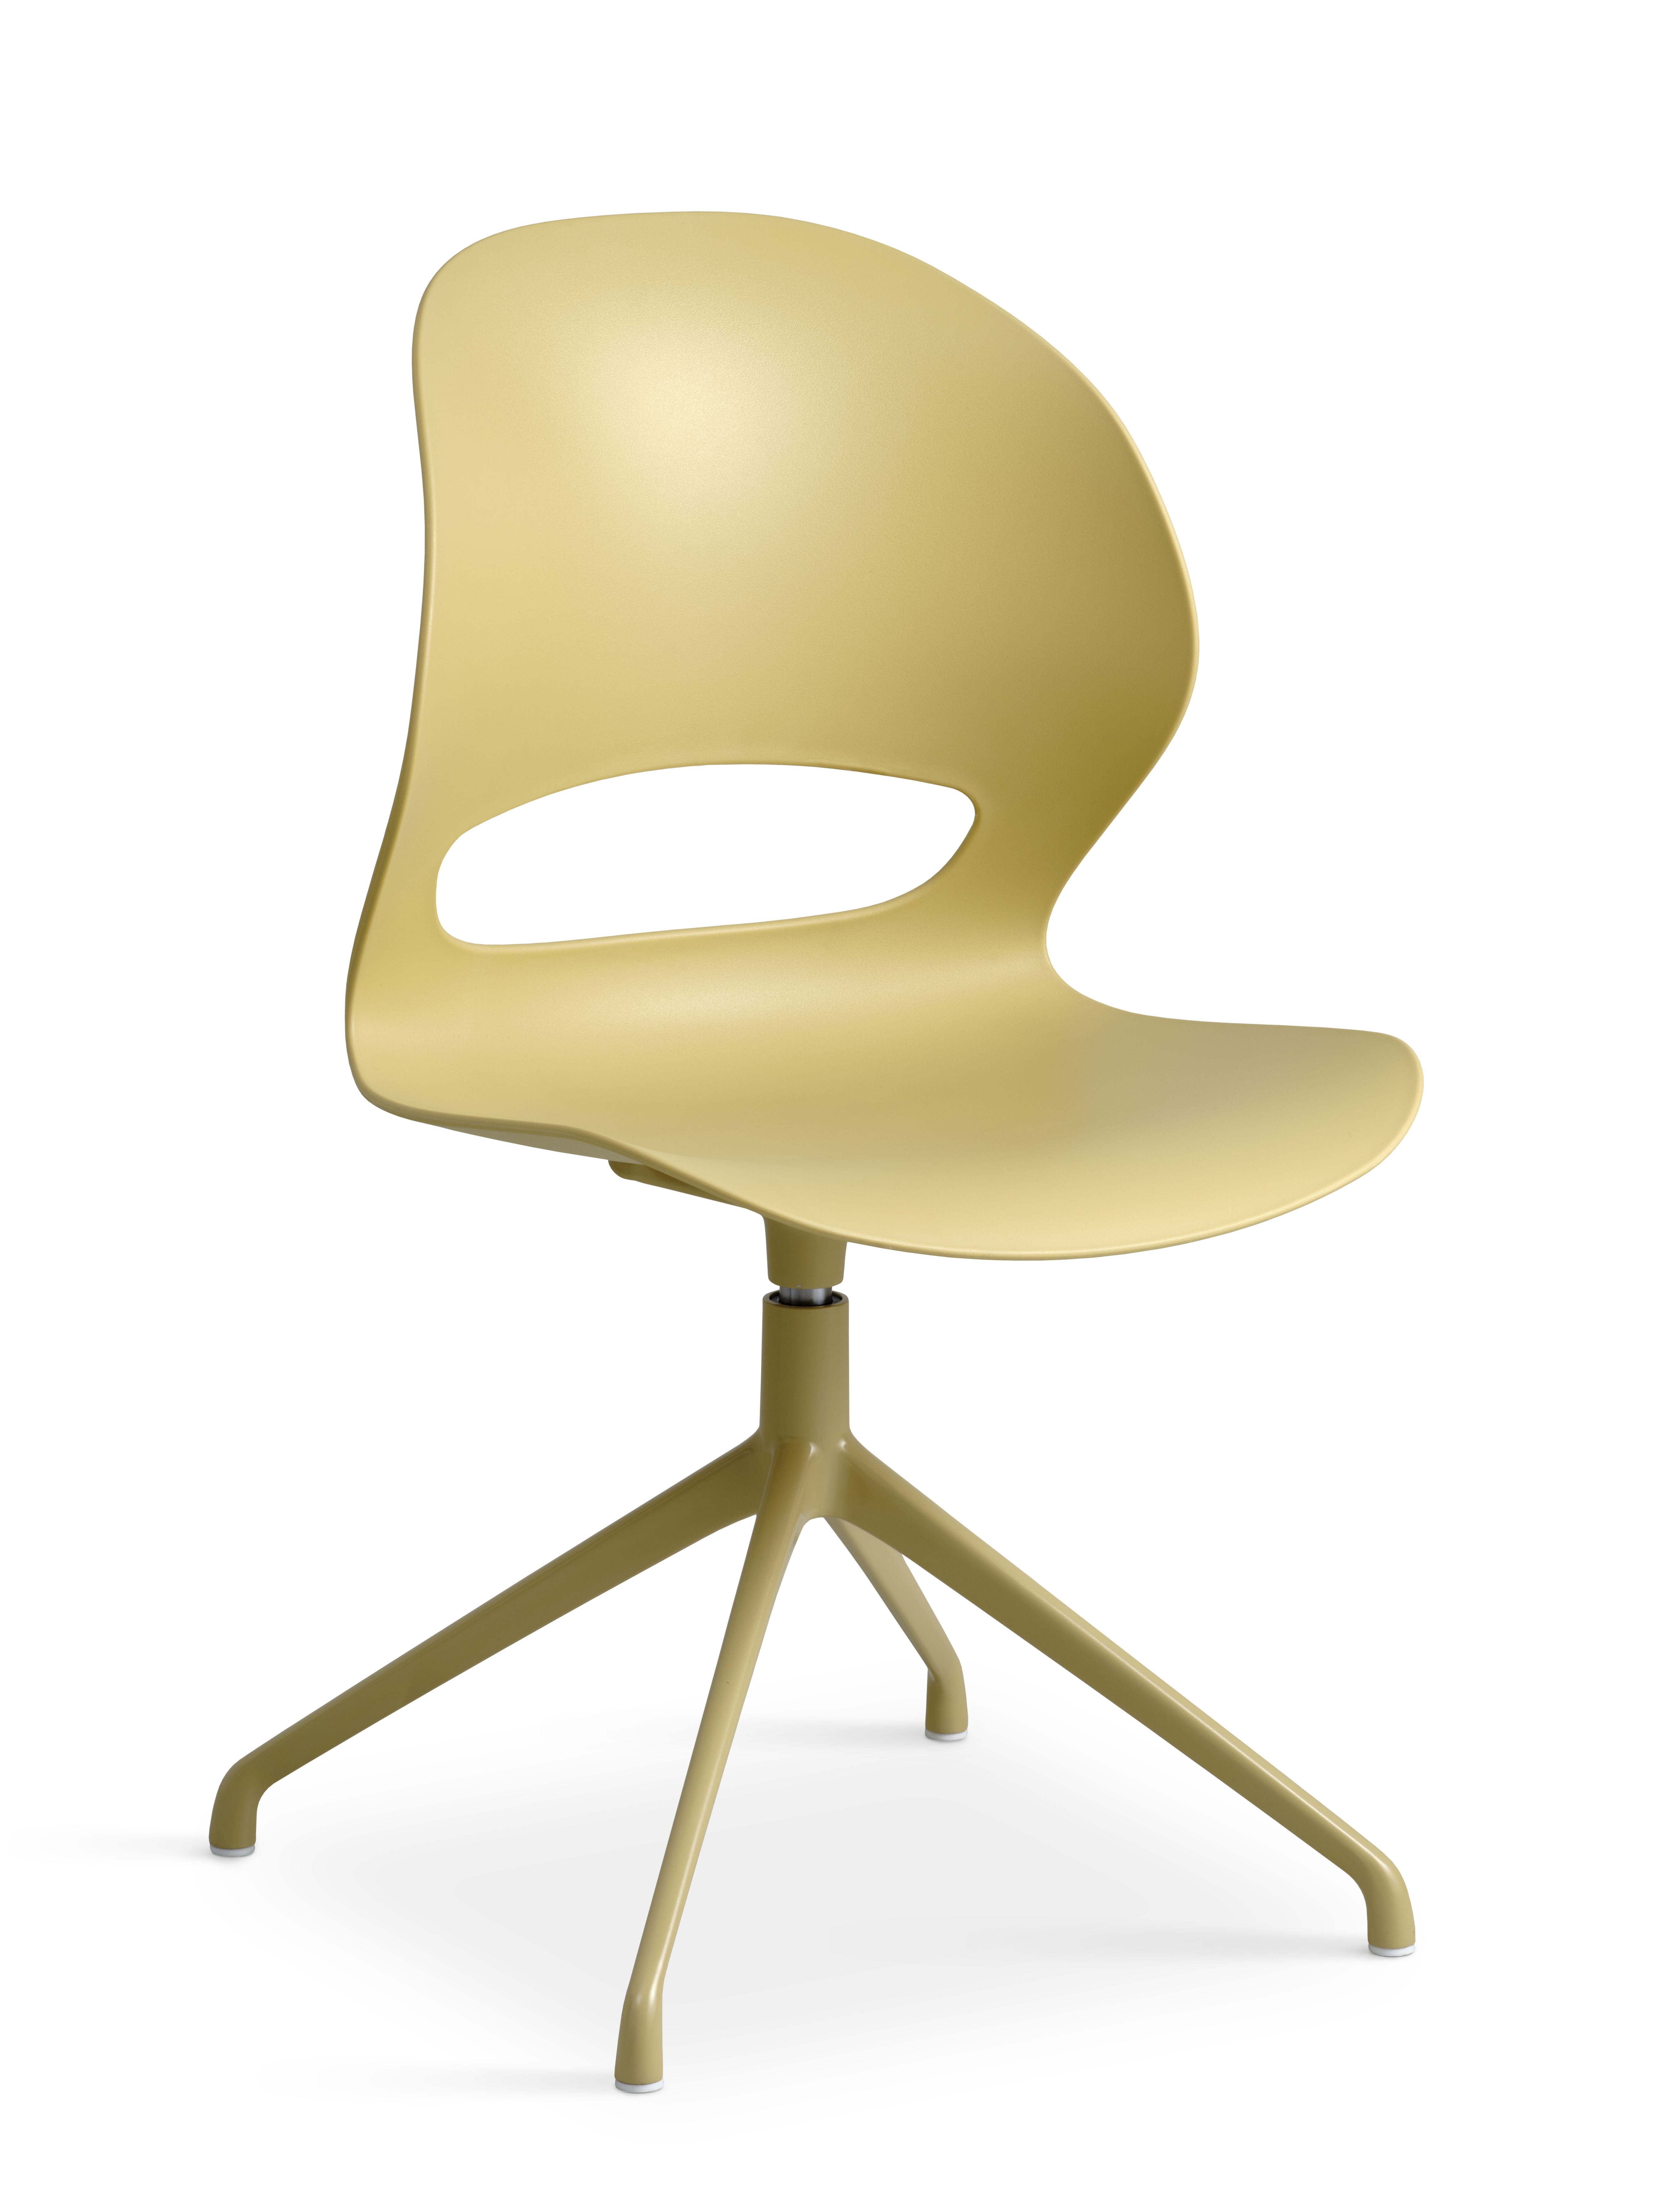 Linea spisebordsstol, m. drejefunktion - sennepsgul PVC og sennepsgul metal